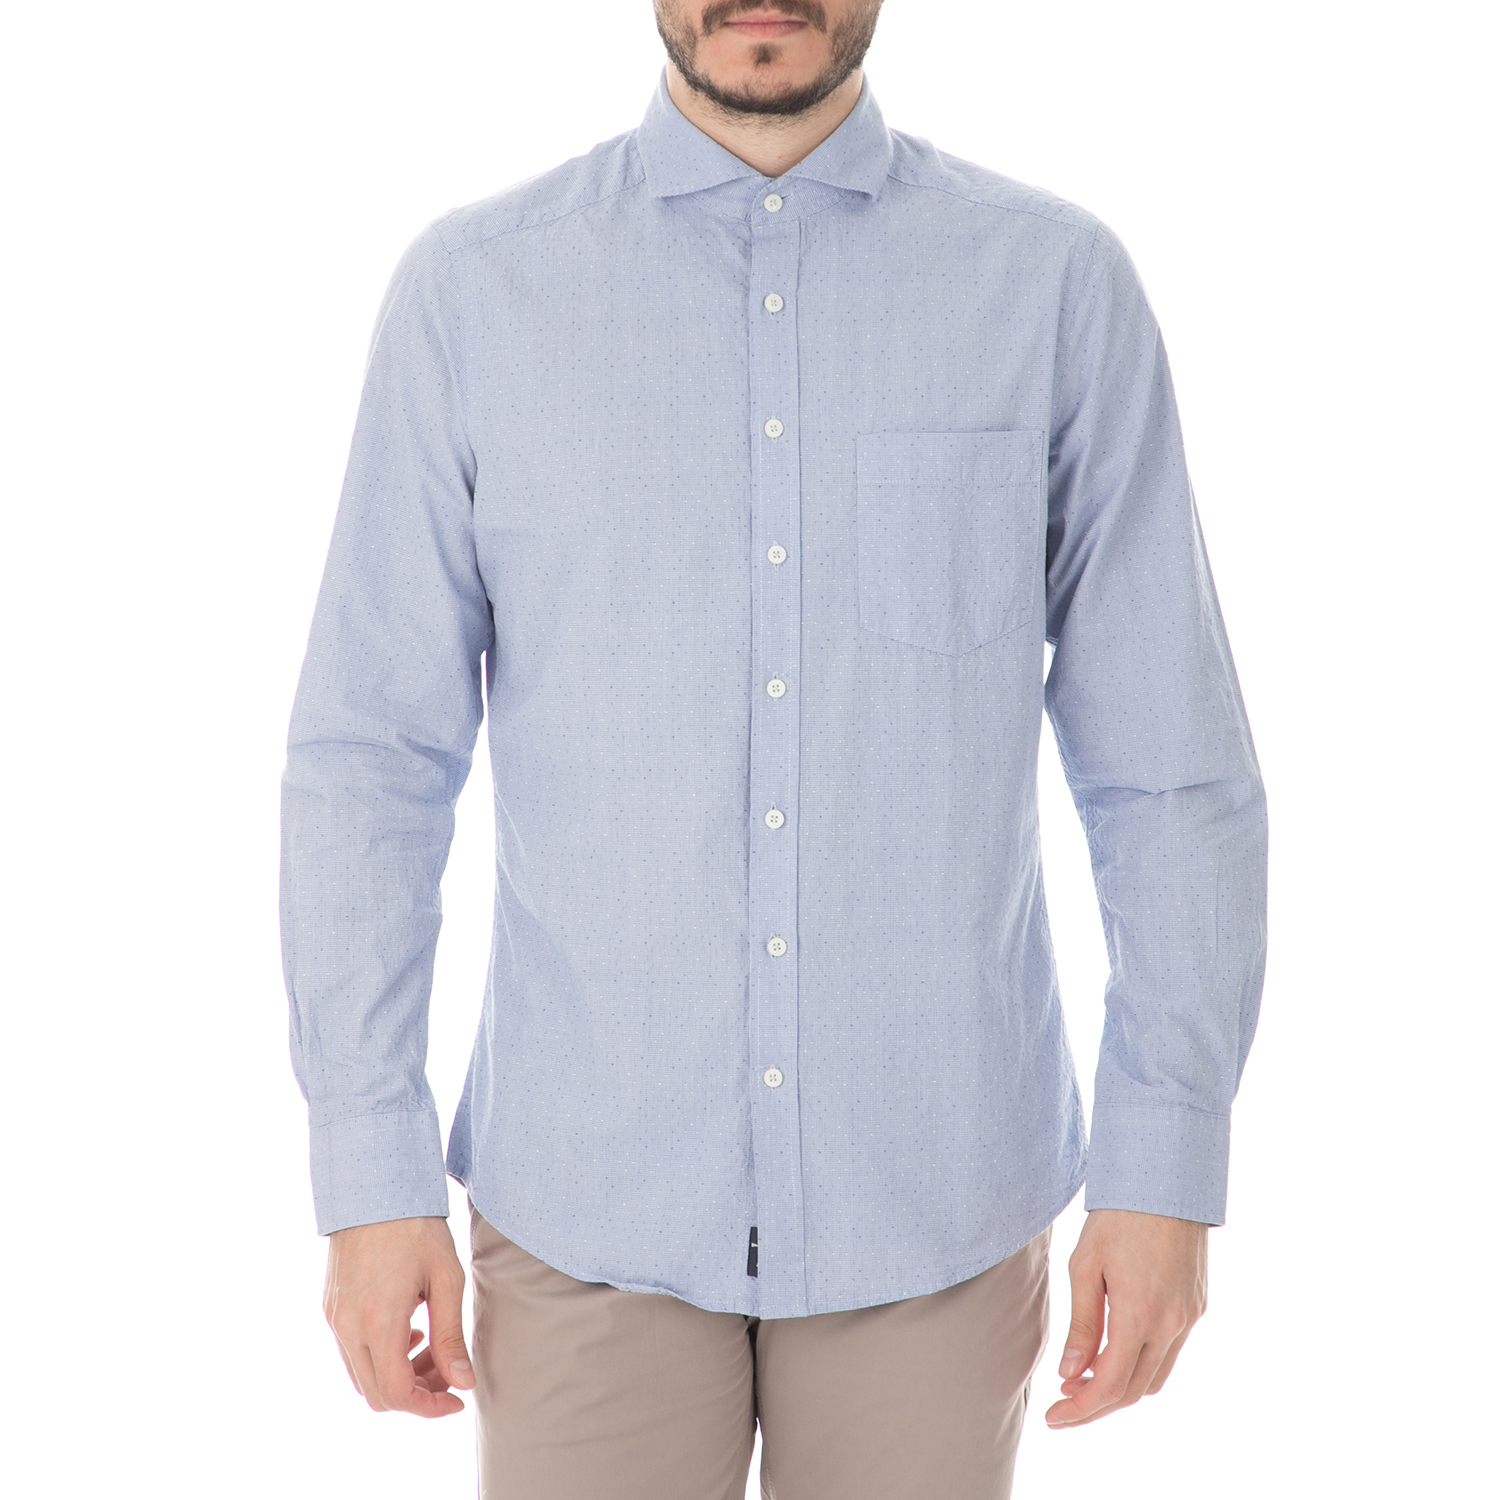 Ανδρικά/Ρούχα/Πουκάμισα/Μακρυμάνικα HAMPTONS - Ανδρικό μακρυμάνικο πουκάμισο HAMPTONS MICRO CHECK γαλάζιο